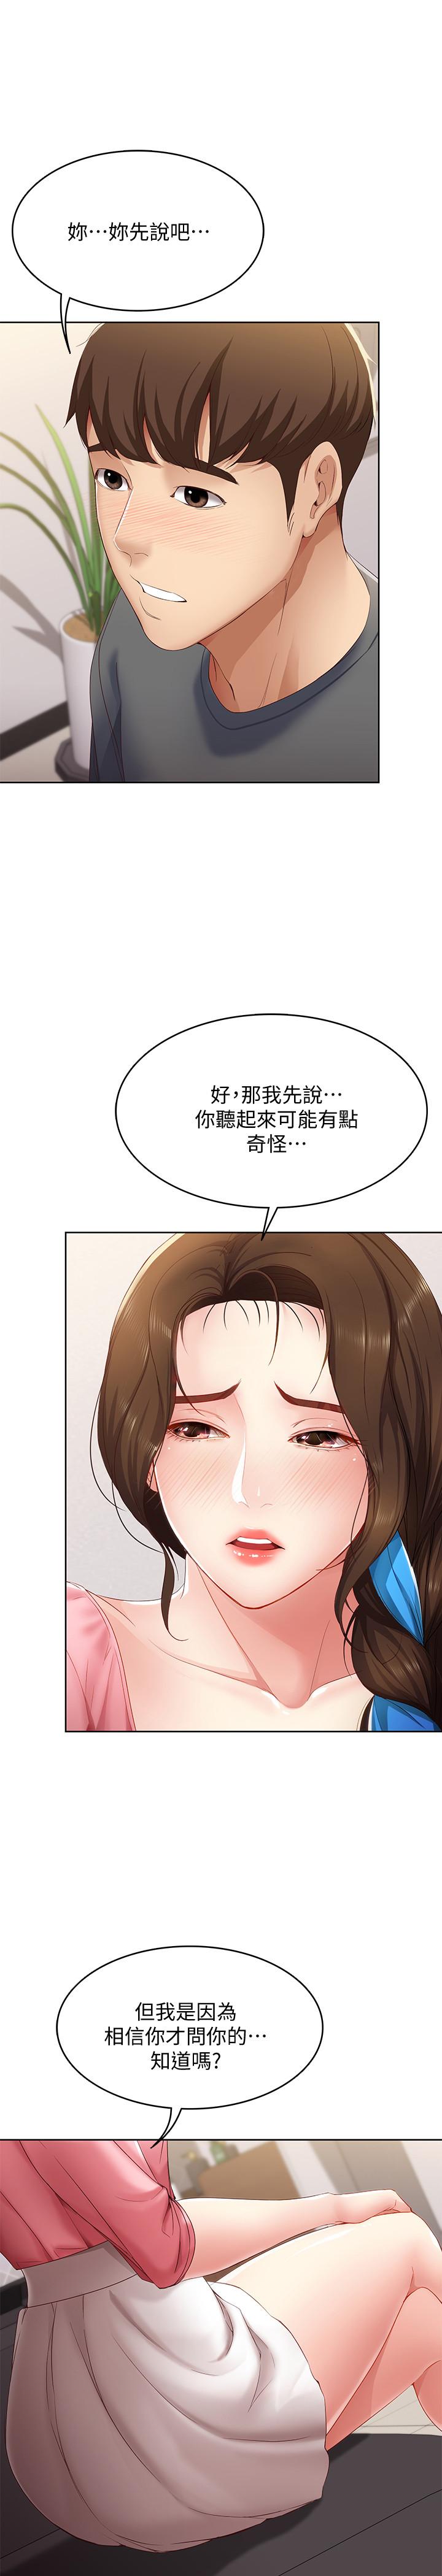 韩国污漫画 寄宿日記 第7话-可以让我看你老二吗 13